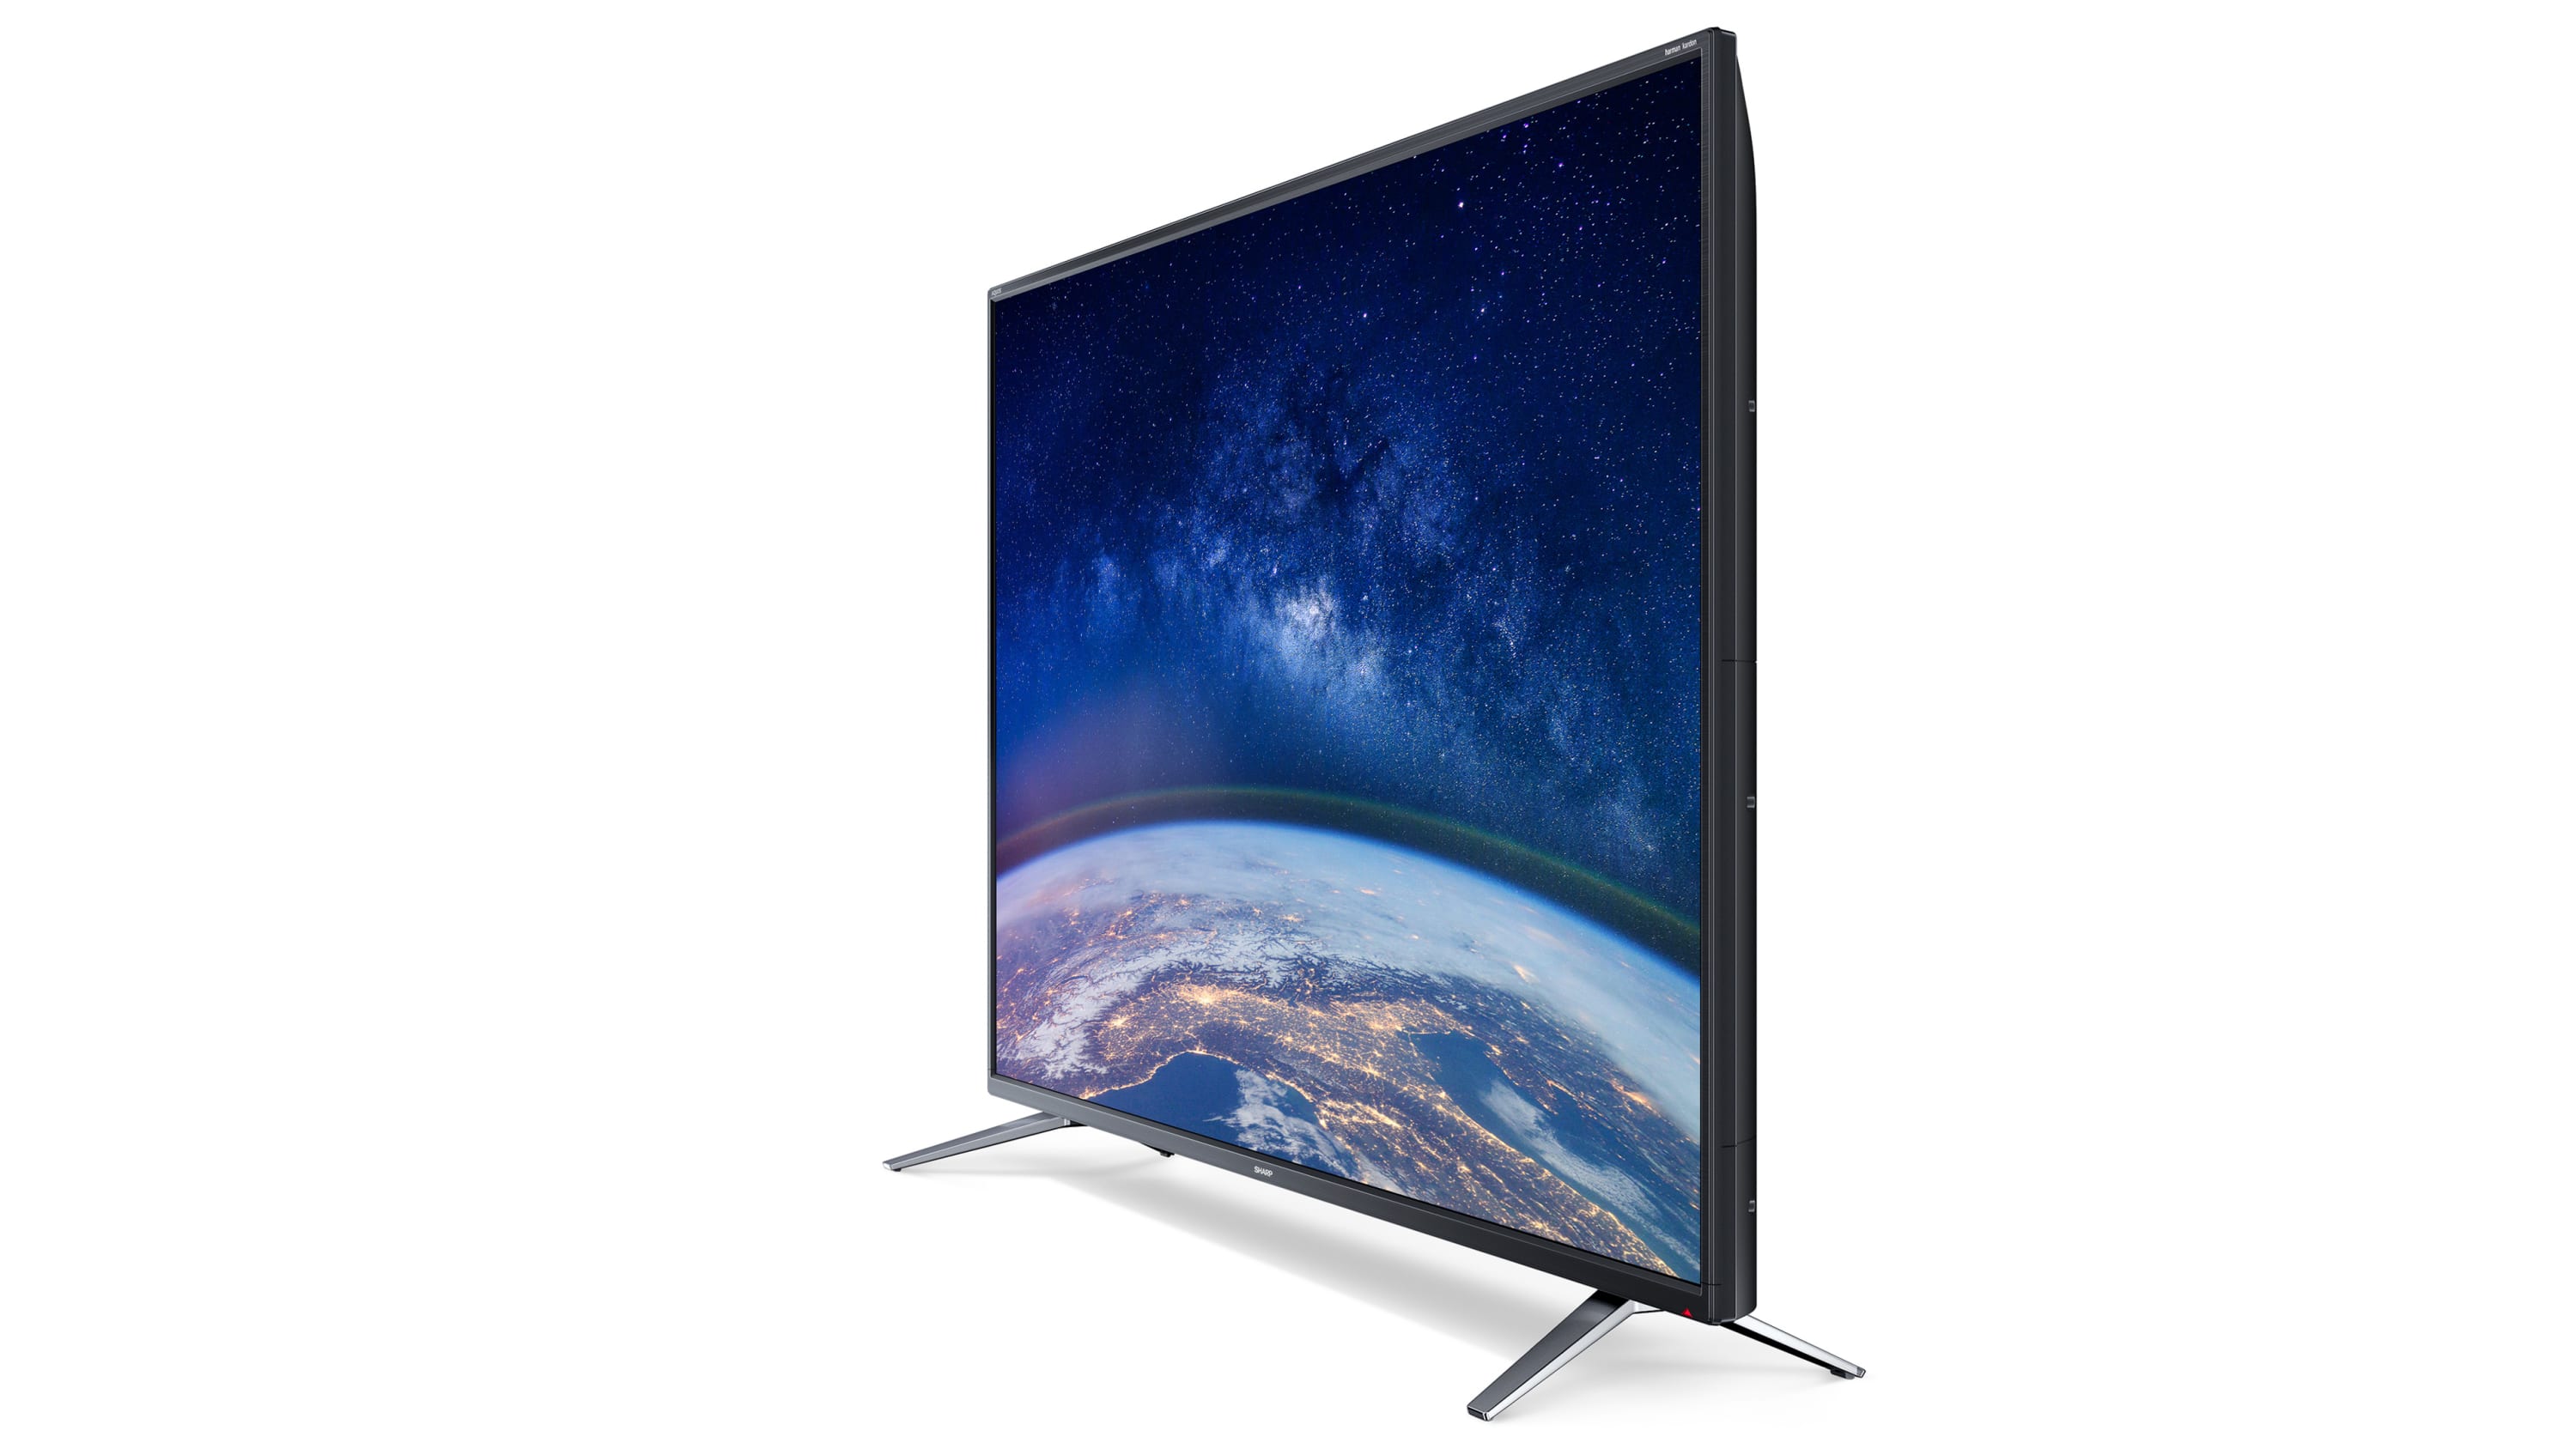 Телевизоры смарт отзывы покупателей. Телевизор 200 см. 50" (127 См) телевизор led Haier 50 Smart TV s5 синий.